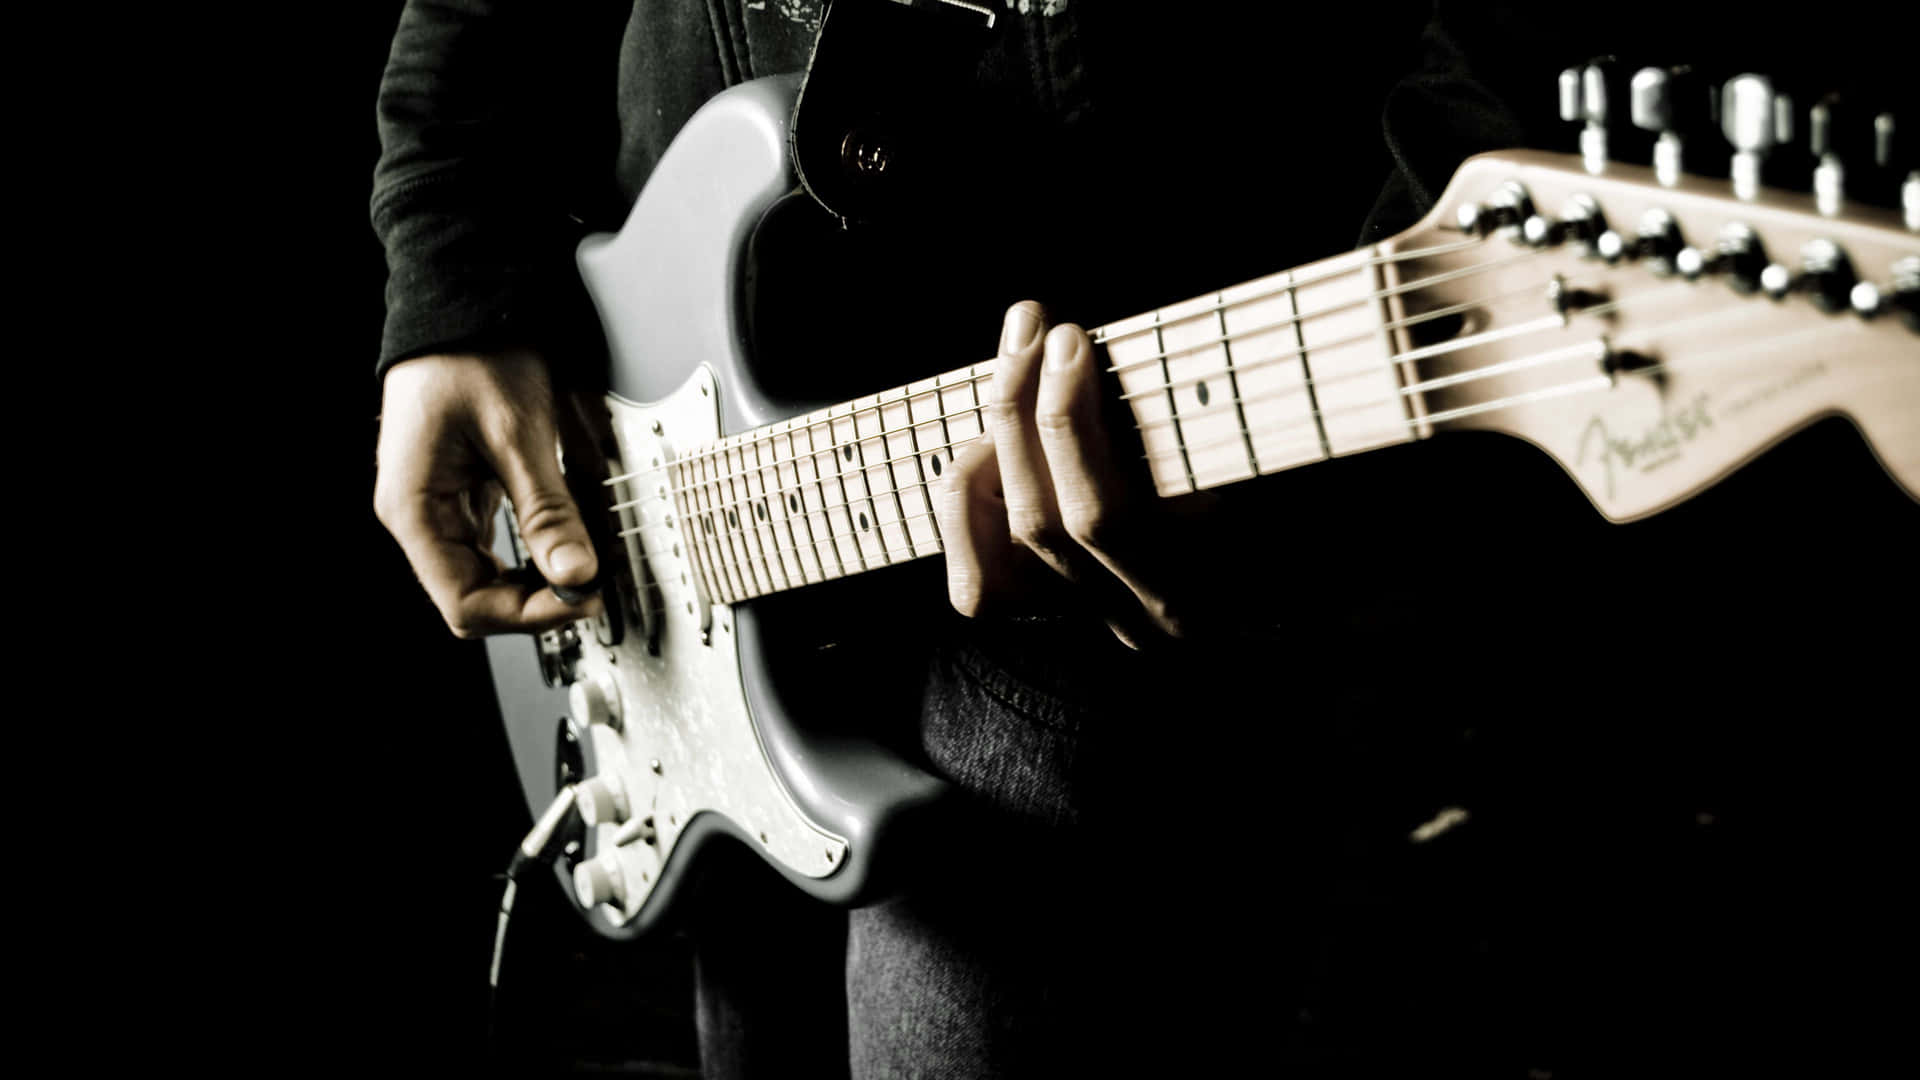 Imagende Una Persona Sosteniendo Un Instrumento Musical, Una Guitarra.